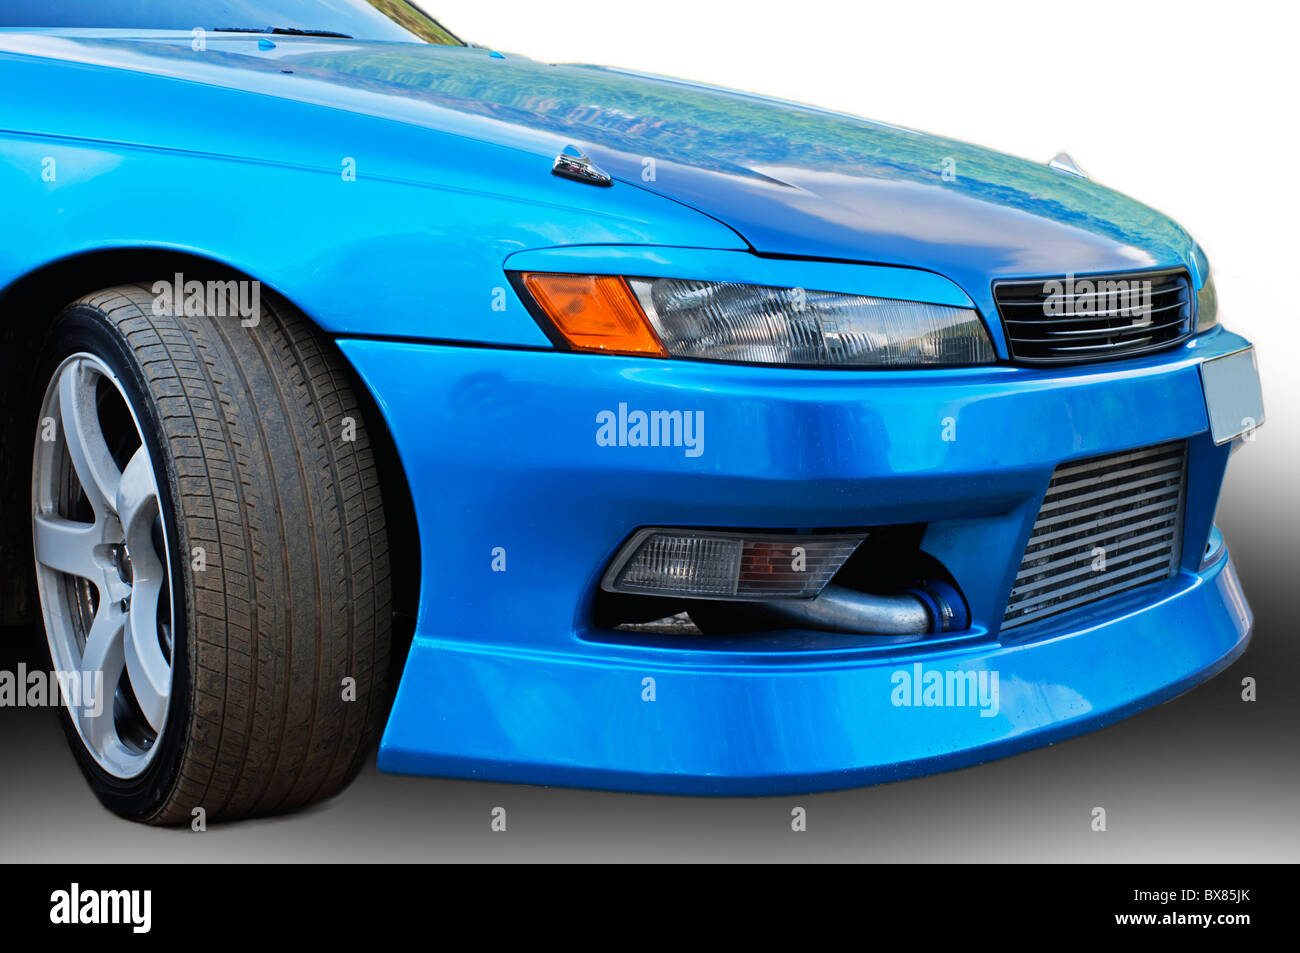 El coche de color azul oscuro con tuning Fotografía de stock - Alamy